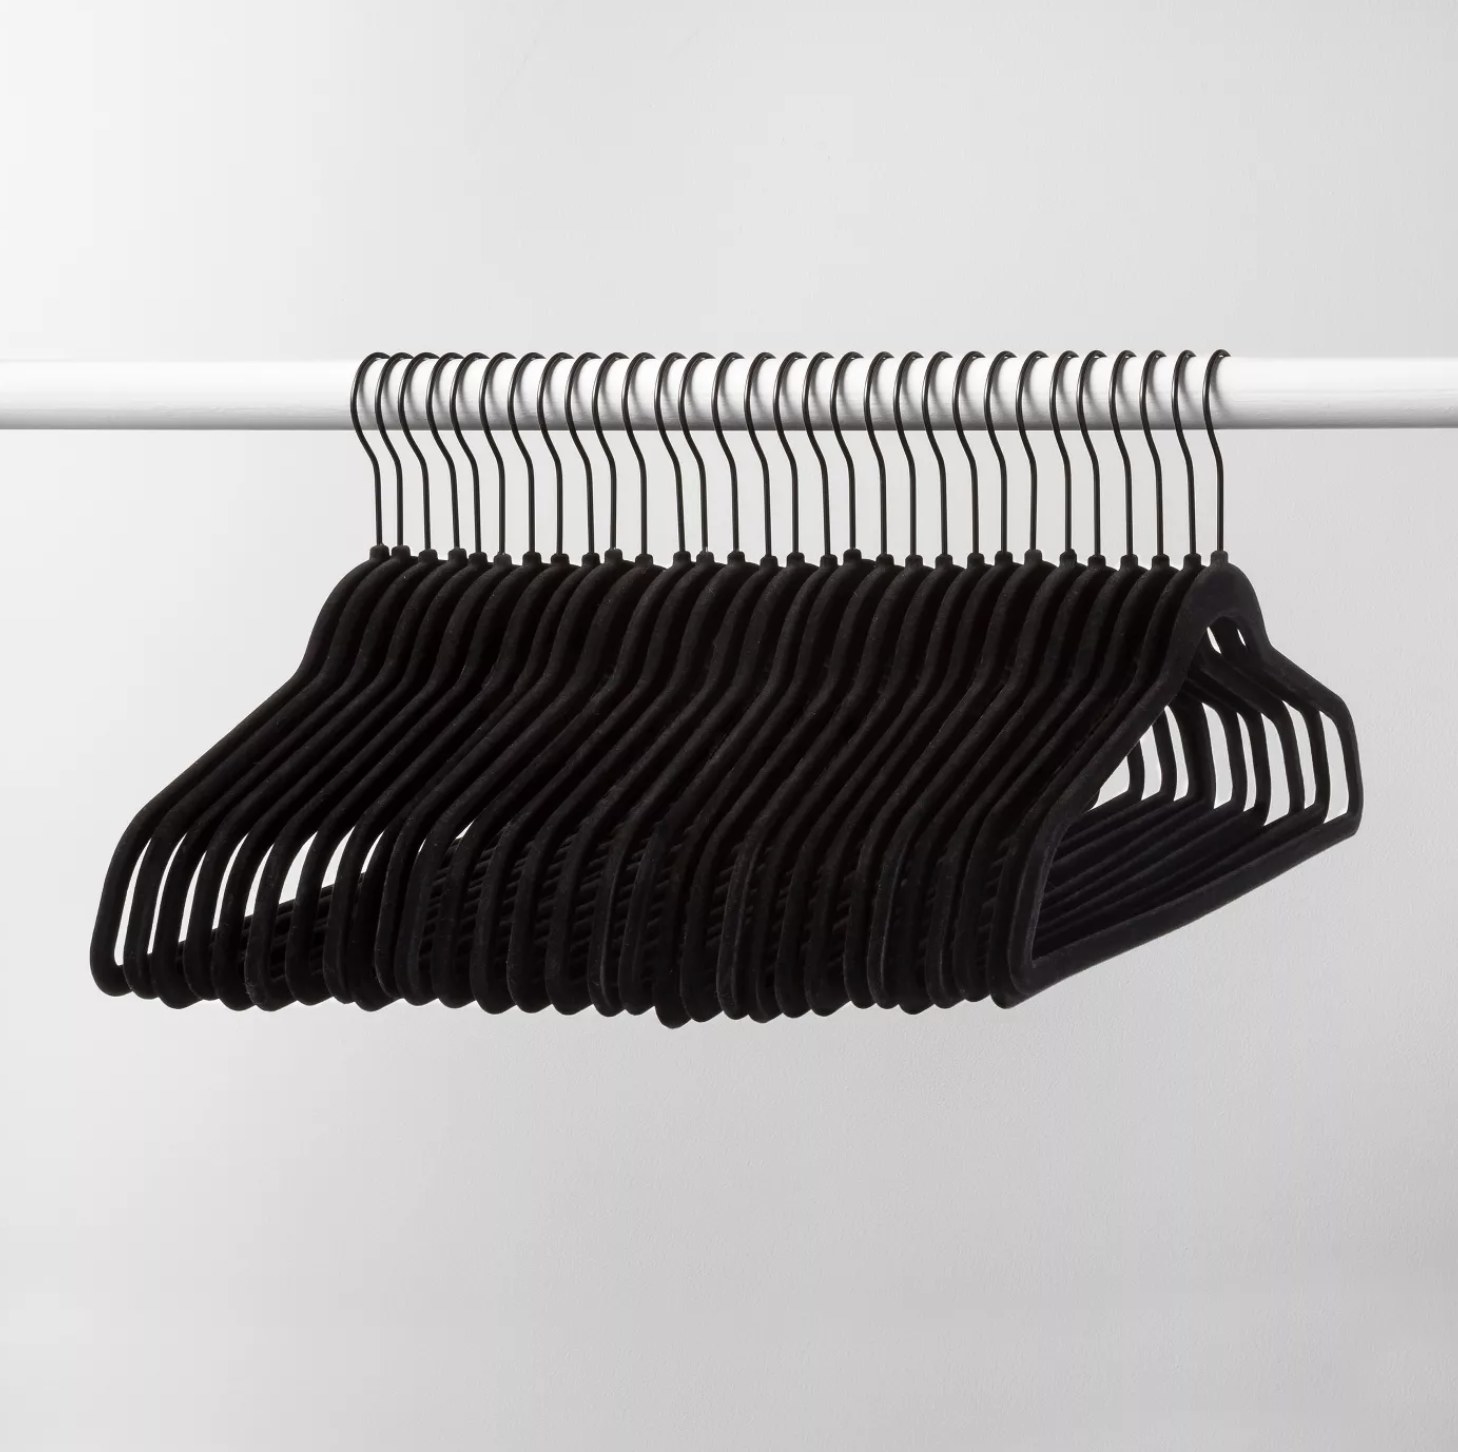 A set of 30 black velvet hangers on a white closet rod.